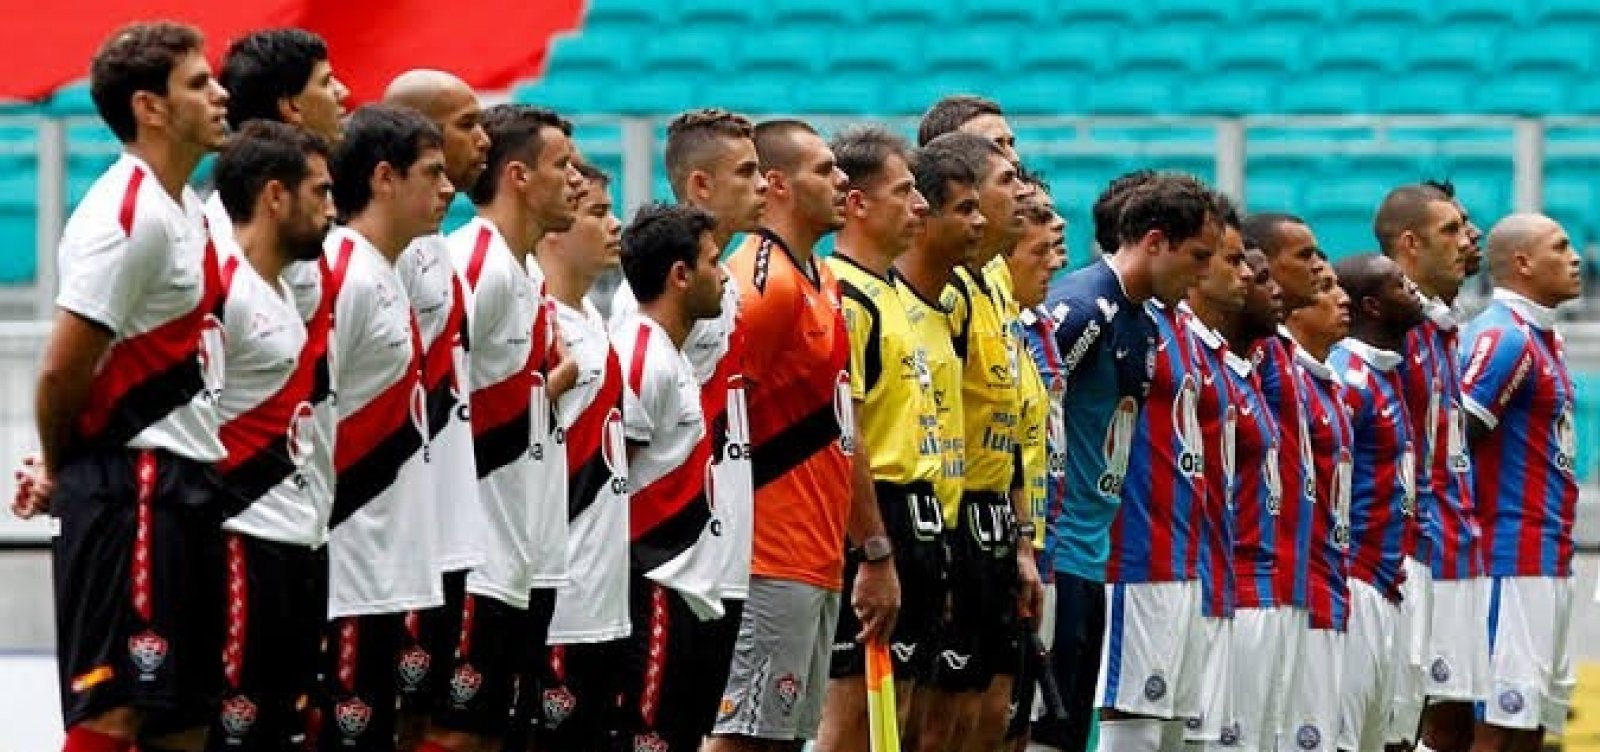 Ba-Vi representa 1% da torcida brasileira; Flamengo é o clube de maior preferência